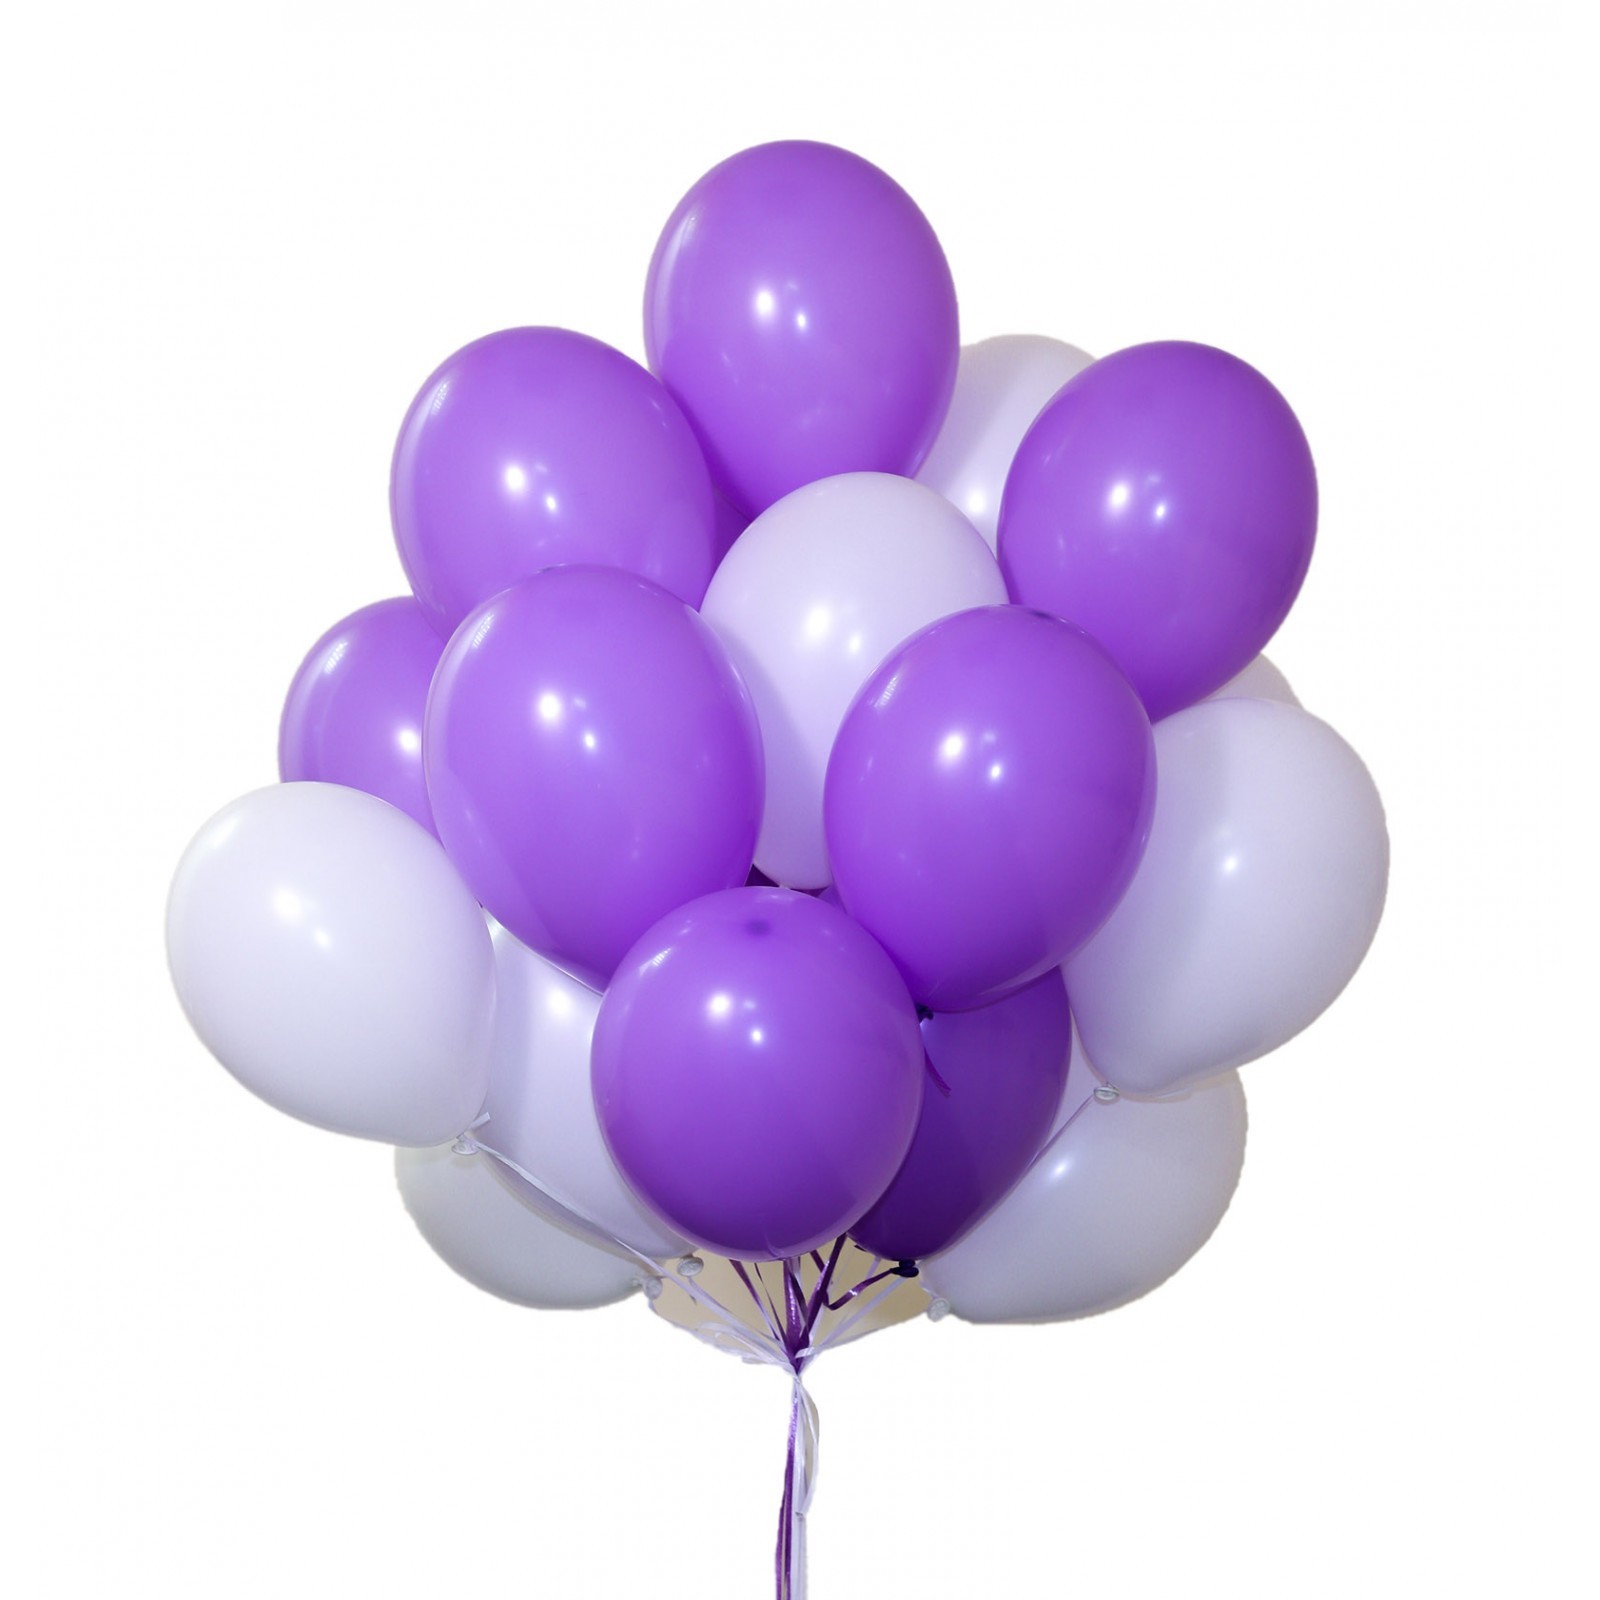 Гелий на 10 шаров. Фиолетовые шары. Воздушные шары. Воздушный шарик. Фиолетовые воздушные шары.